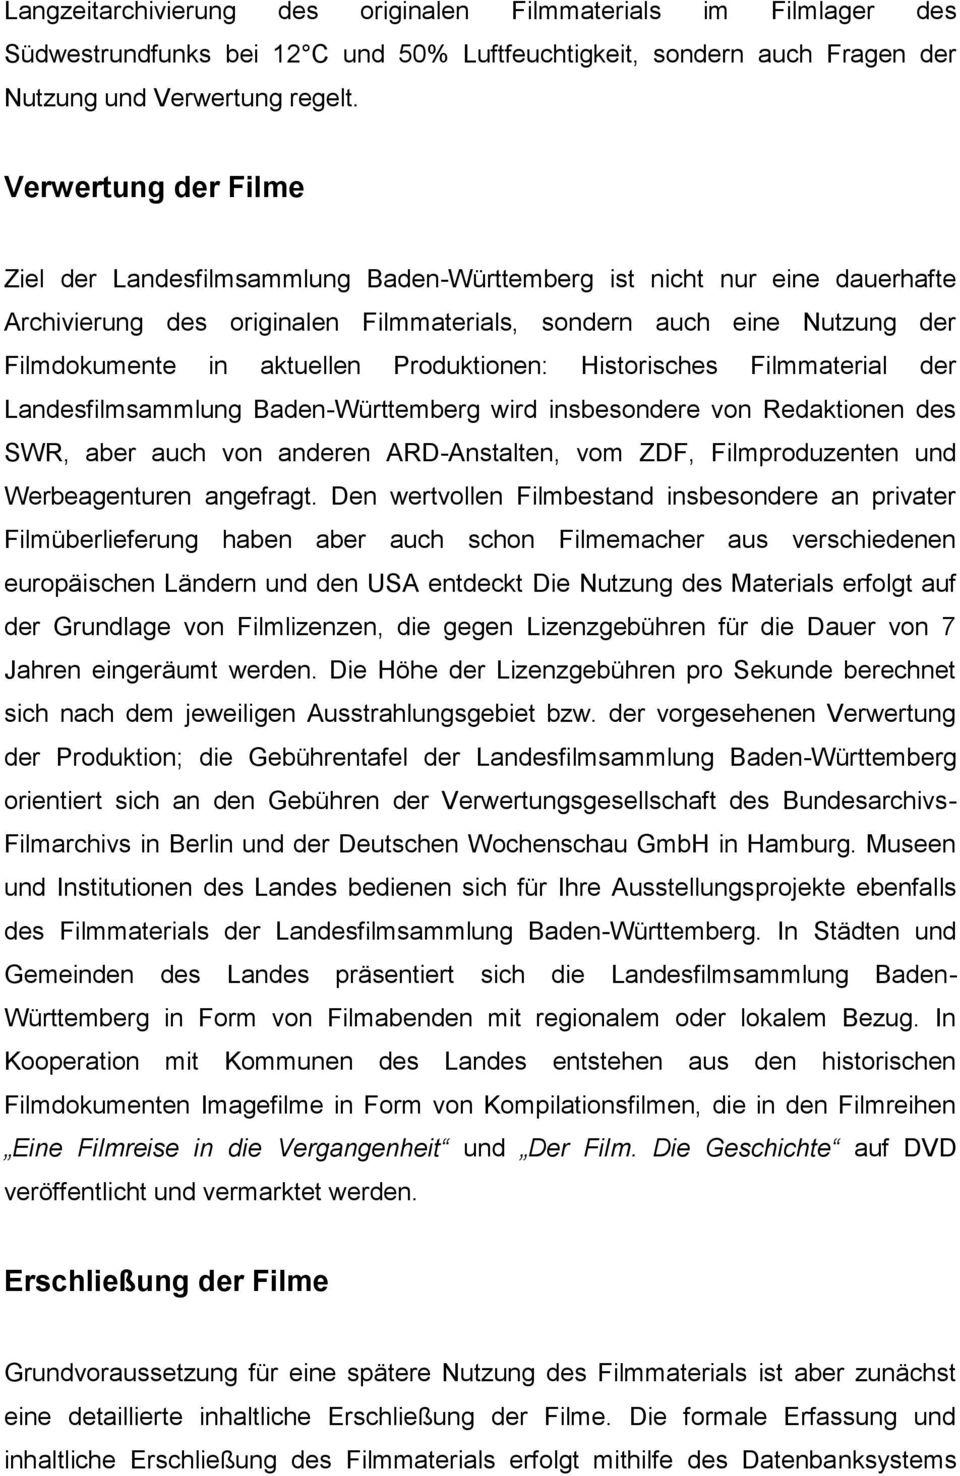 Produktionen: Historisches Filmmaterial der Landesfilmsammlung Baden-Württemberg wird insbesondere von Redaktionen des SWR, aber auch von anderen ARD-Anstalten, vom ZDF, Filmproduzenten und